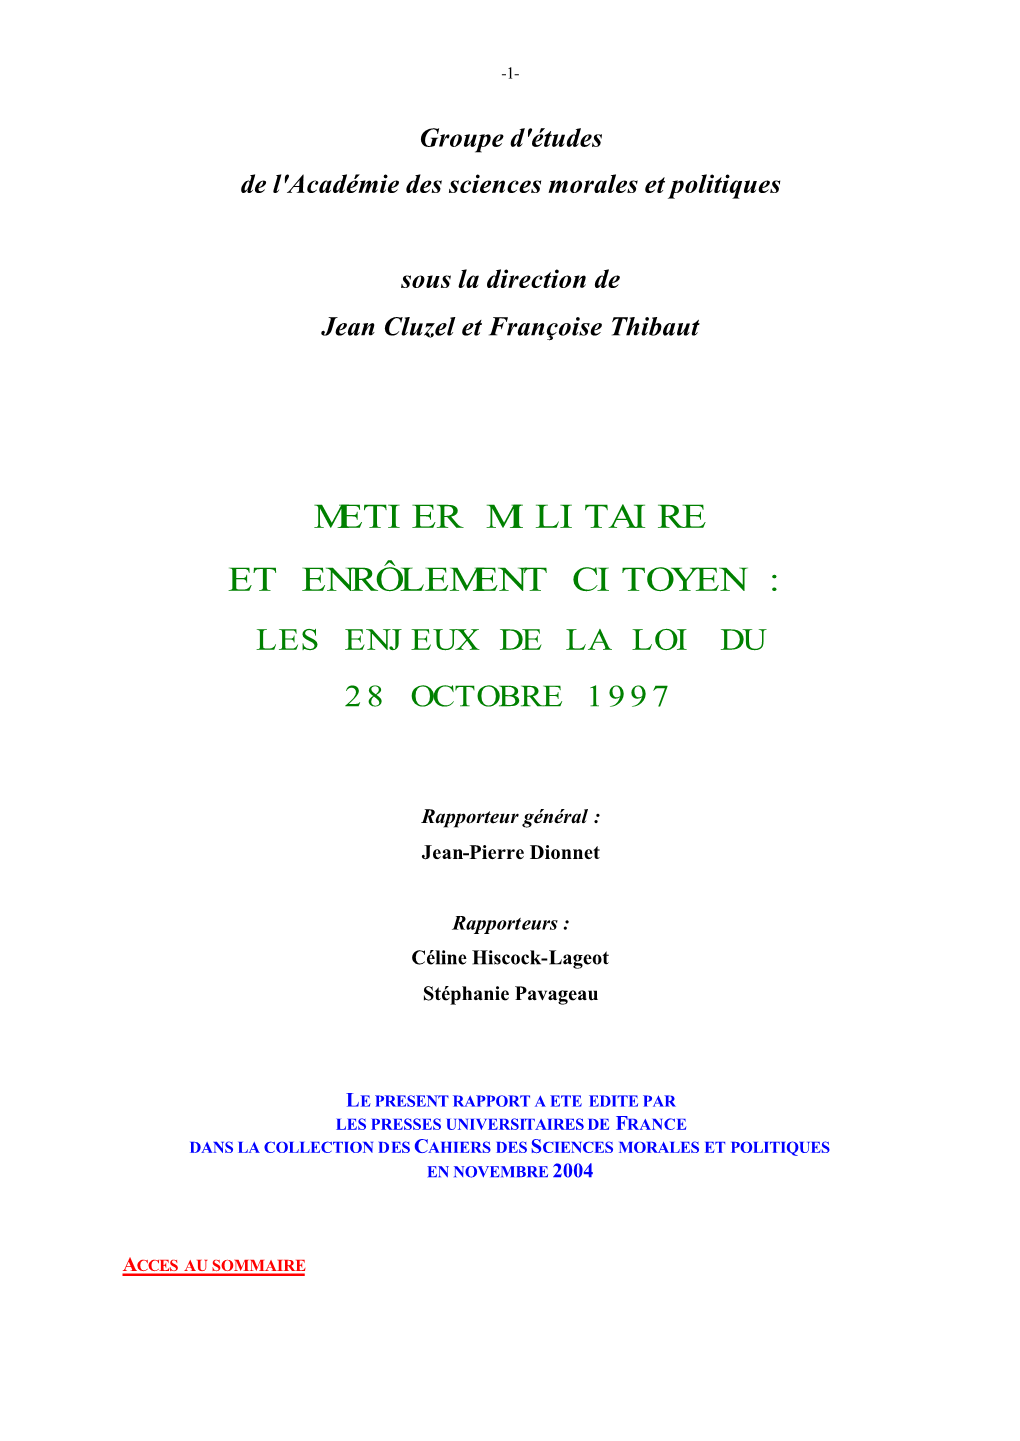 Metier Militaire Et Enrôlement Citoyen : Les Enjeux De La Loi Du 28 Octobre 1997